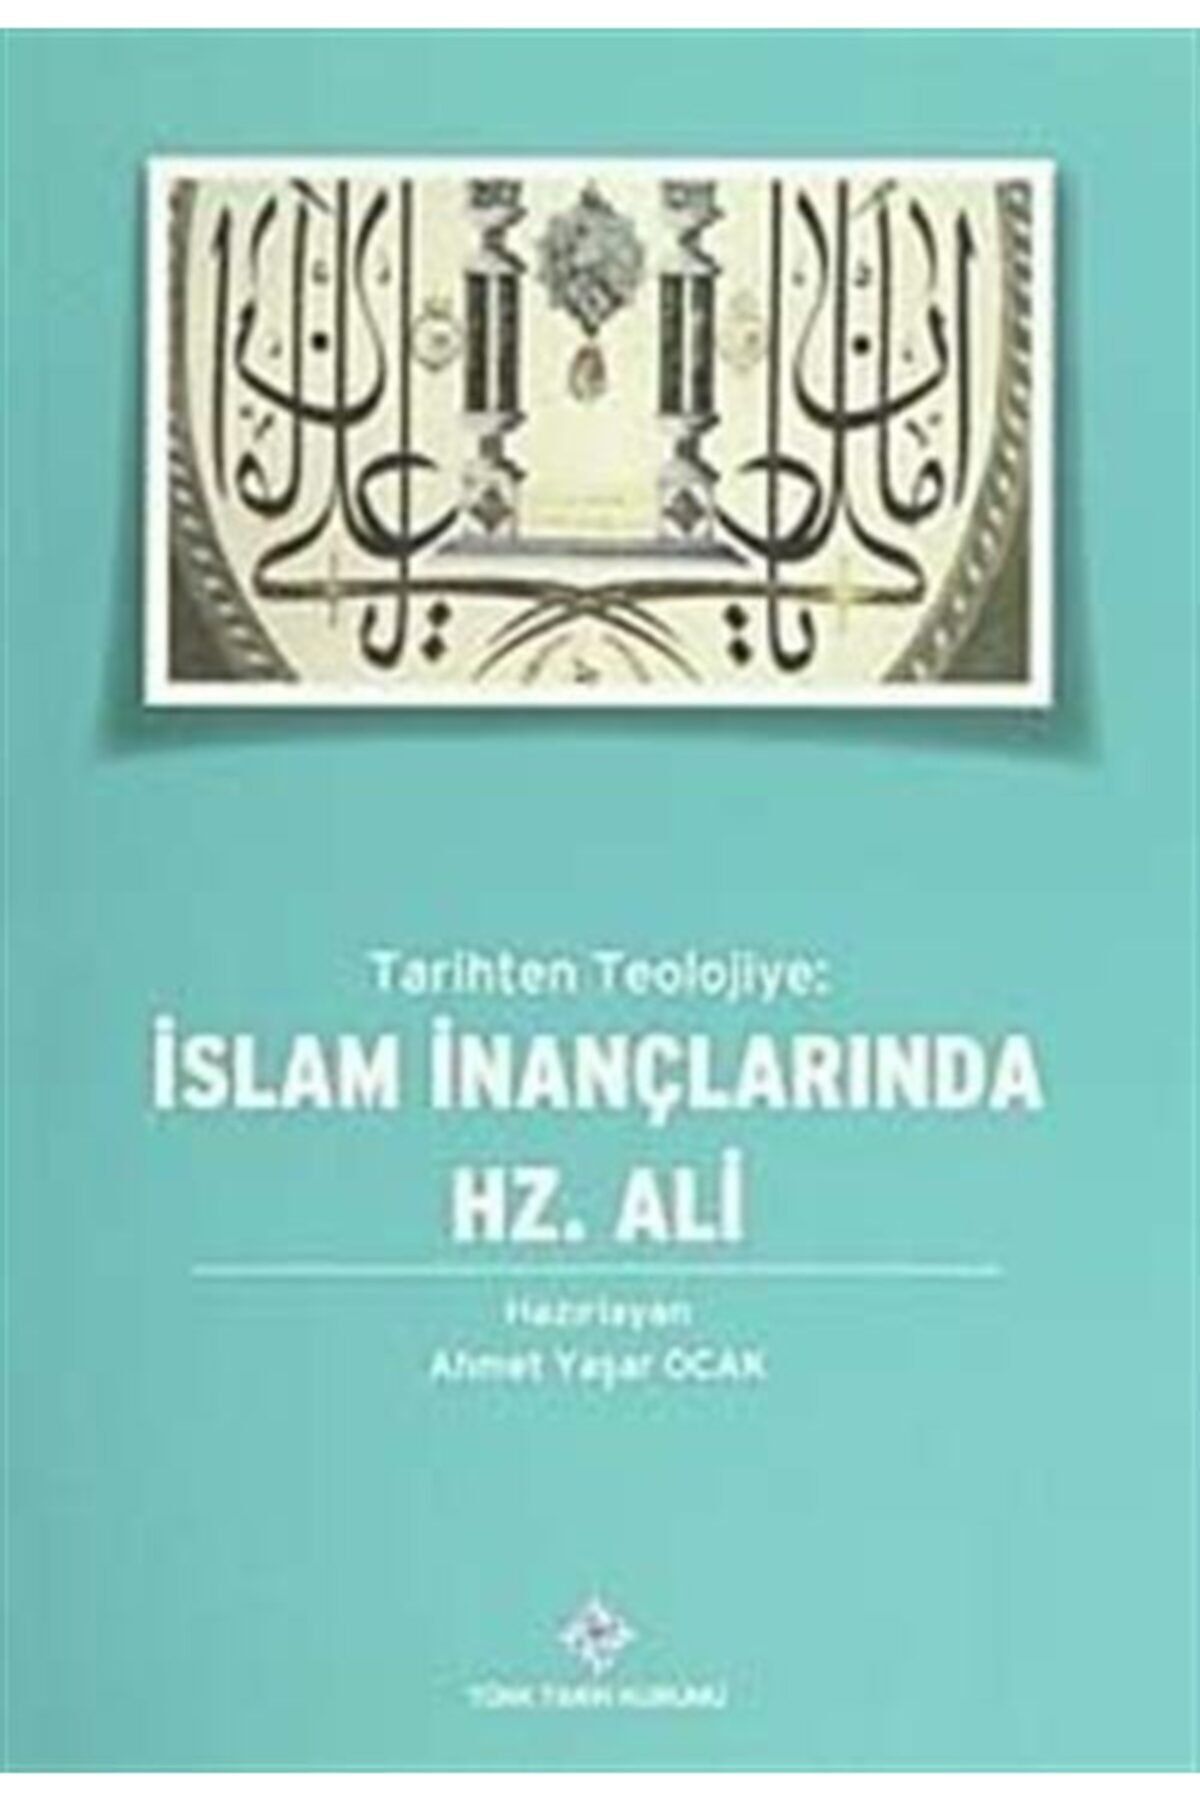 Türk Tarih Kurumu Yayınları Tarihten Teolojiye: Islam Inançlarında Hz.ali